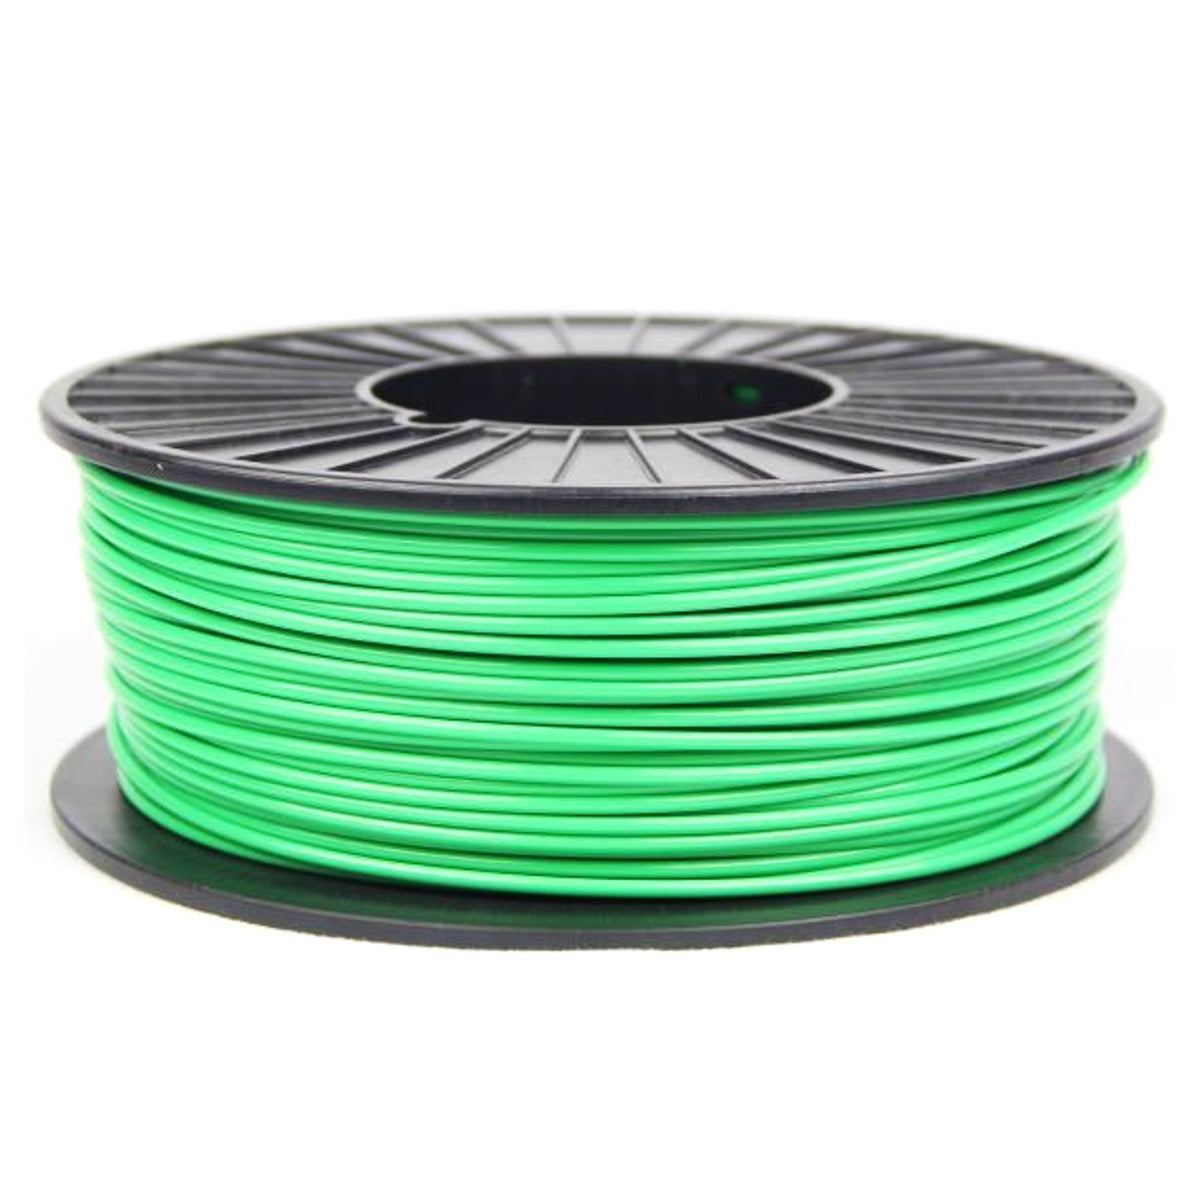 3DMakerWorld ABS (PA-747) Filament - 2.85mm, 1kg, Green